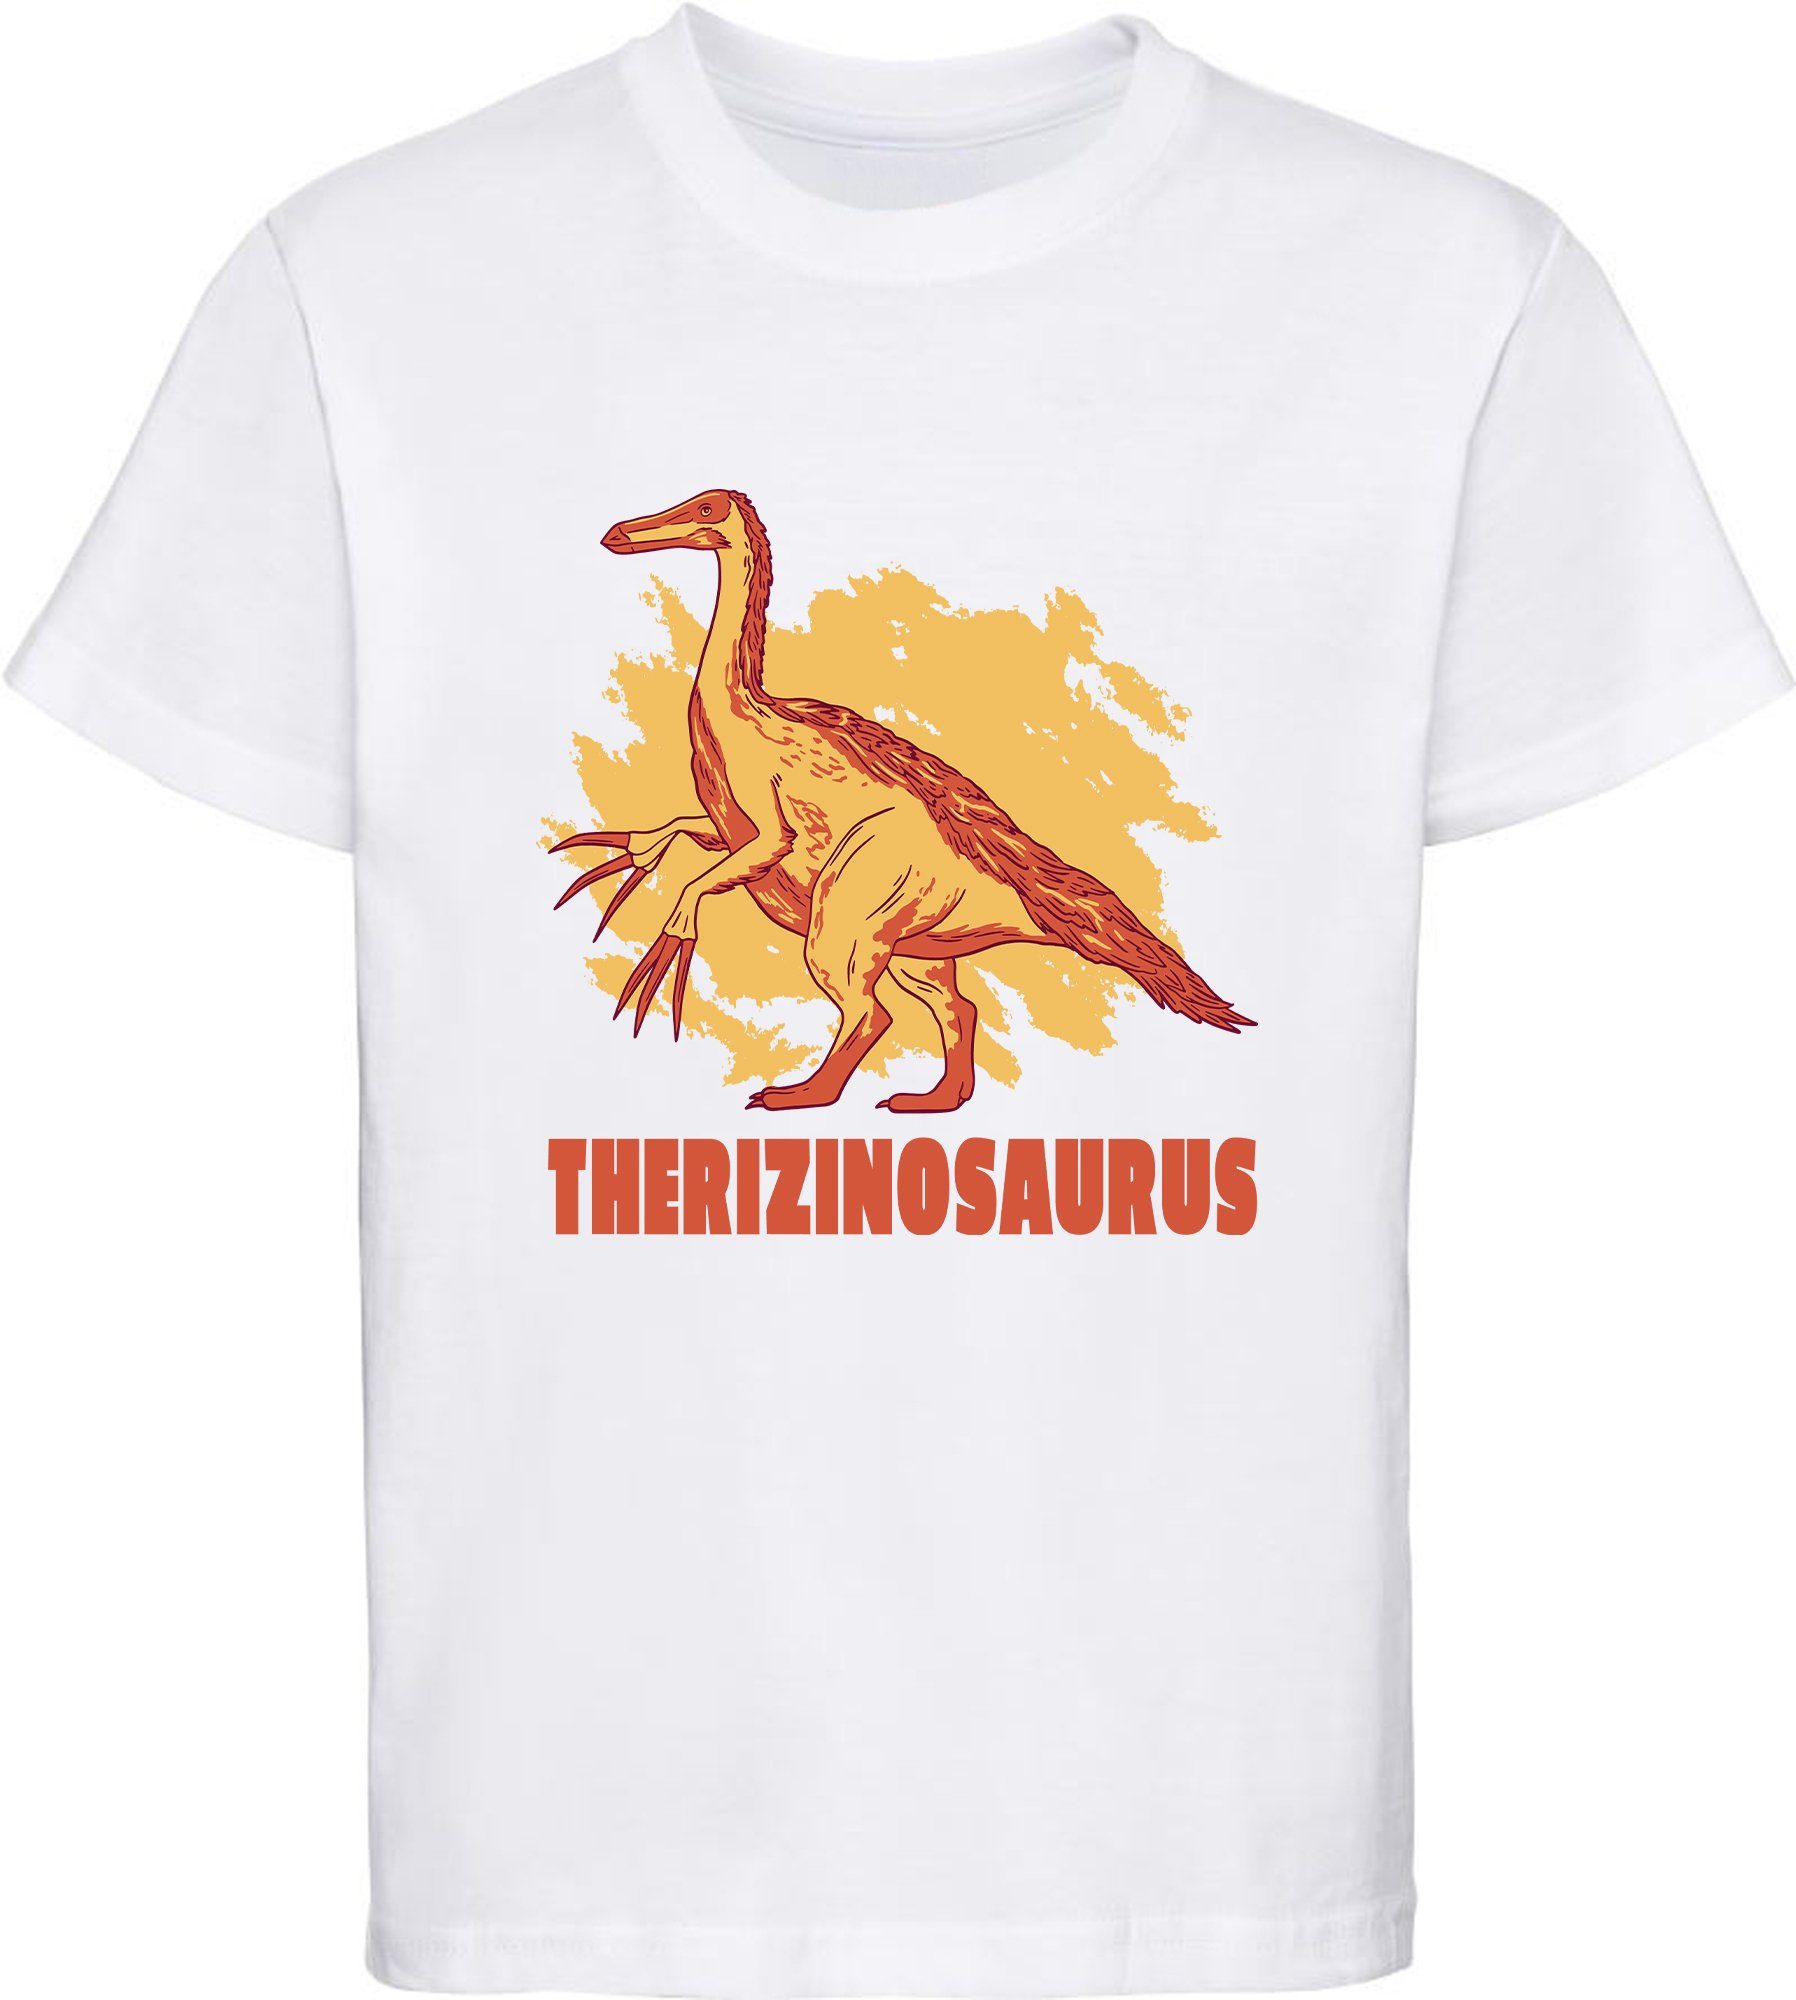 MyDesign24 Print-Shirt bedrucktes Kinder T-Shirt mit Therizinosaurus Baumwollshirt mit Dino, schwarz, weiß, rot, blau, i87 weiss